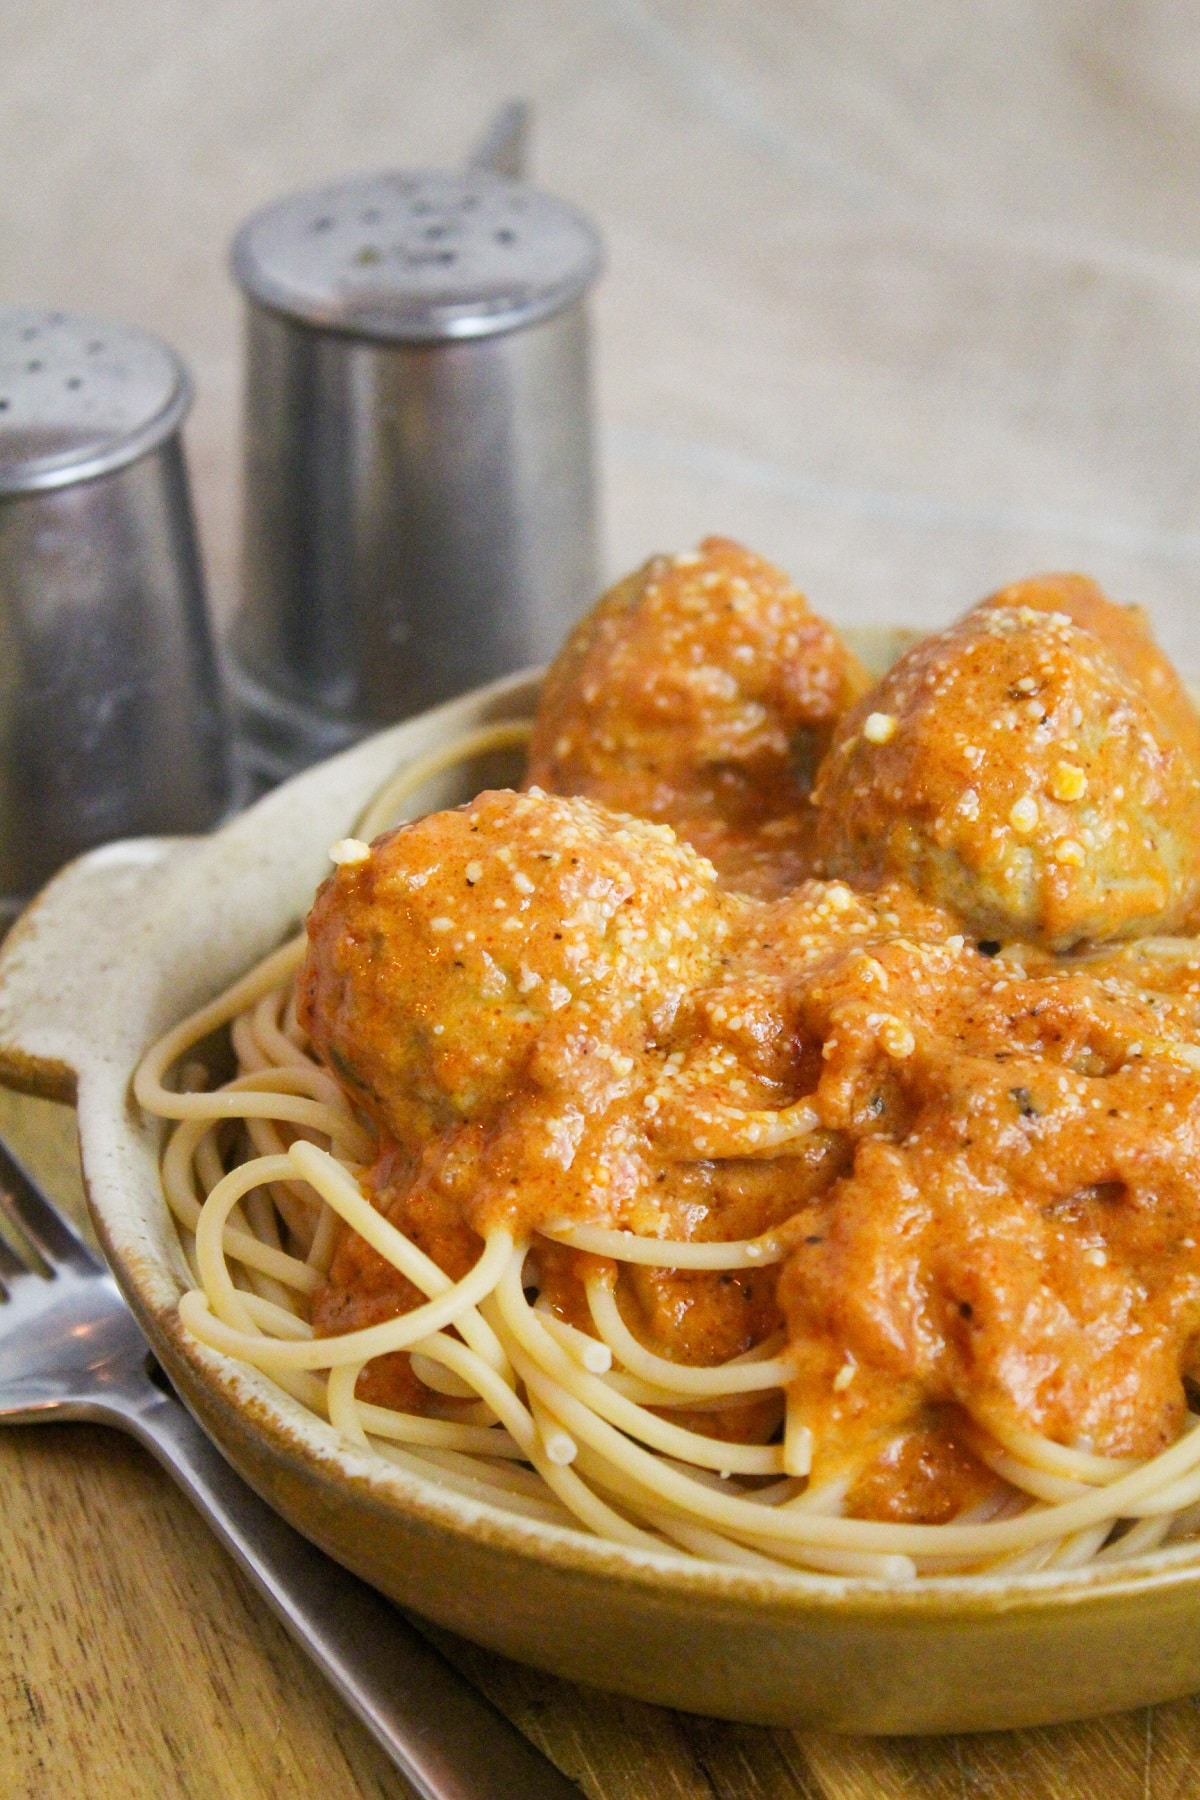 Meatballs cooked in a creamy tomato sauce over spaghetti.